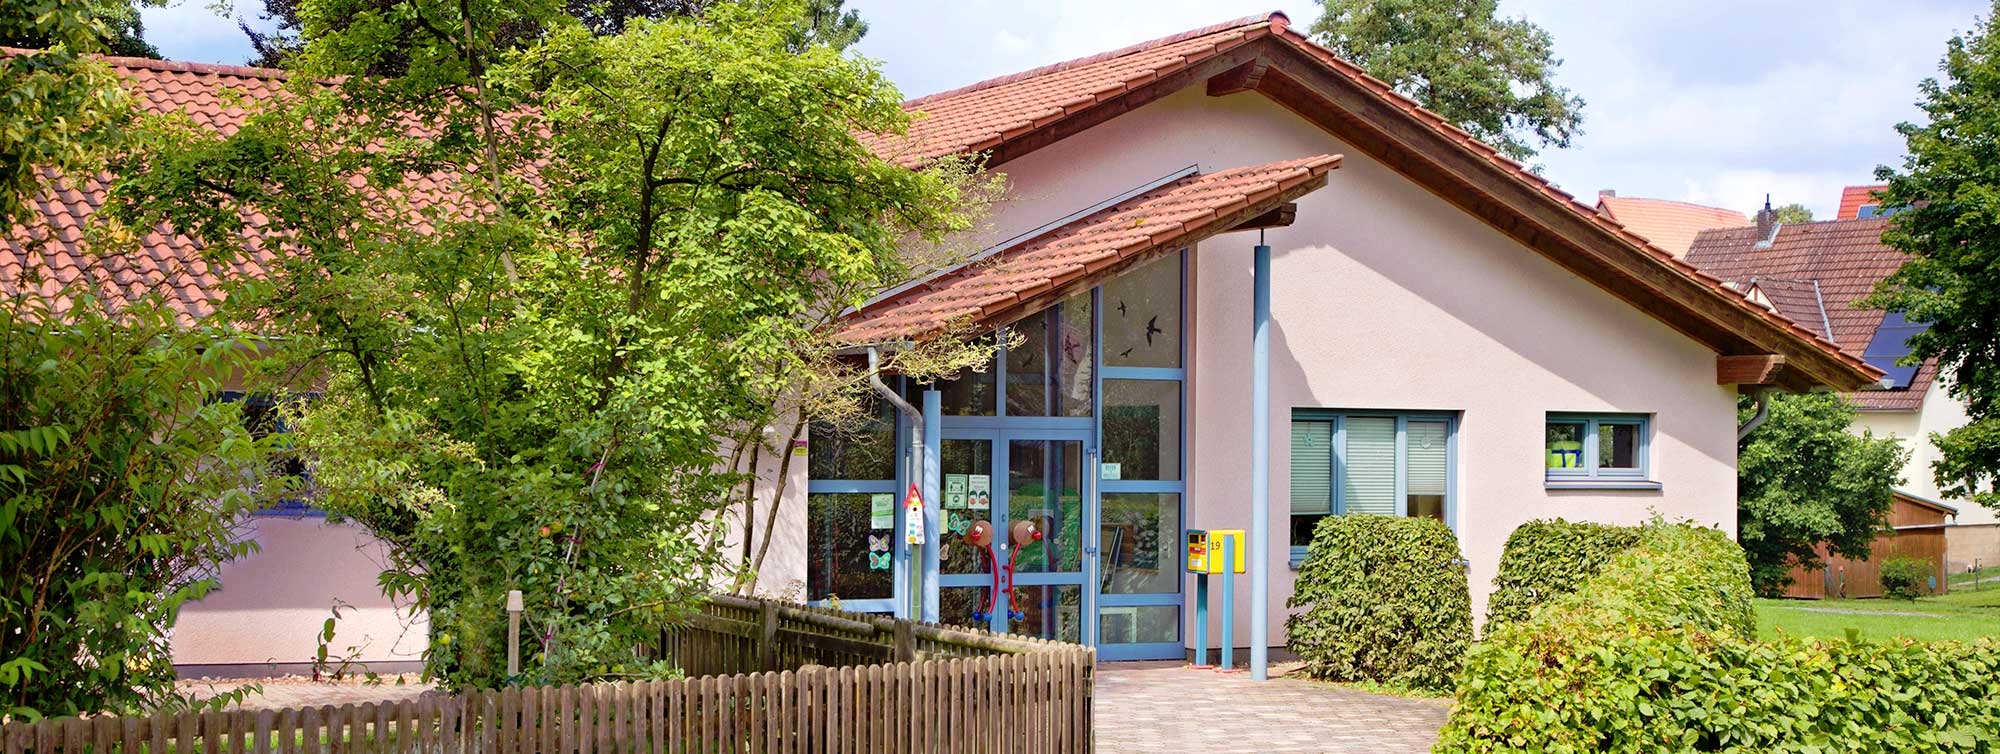 Aussenansicht der Ev. Kindertagesstätte Arche in Bad Arolsen - Mengeringhausen